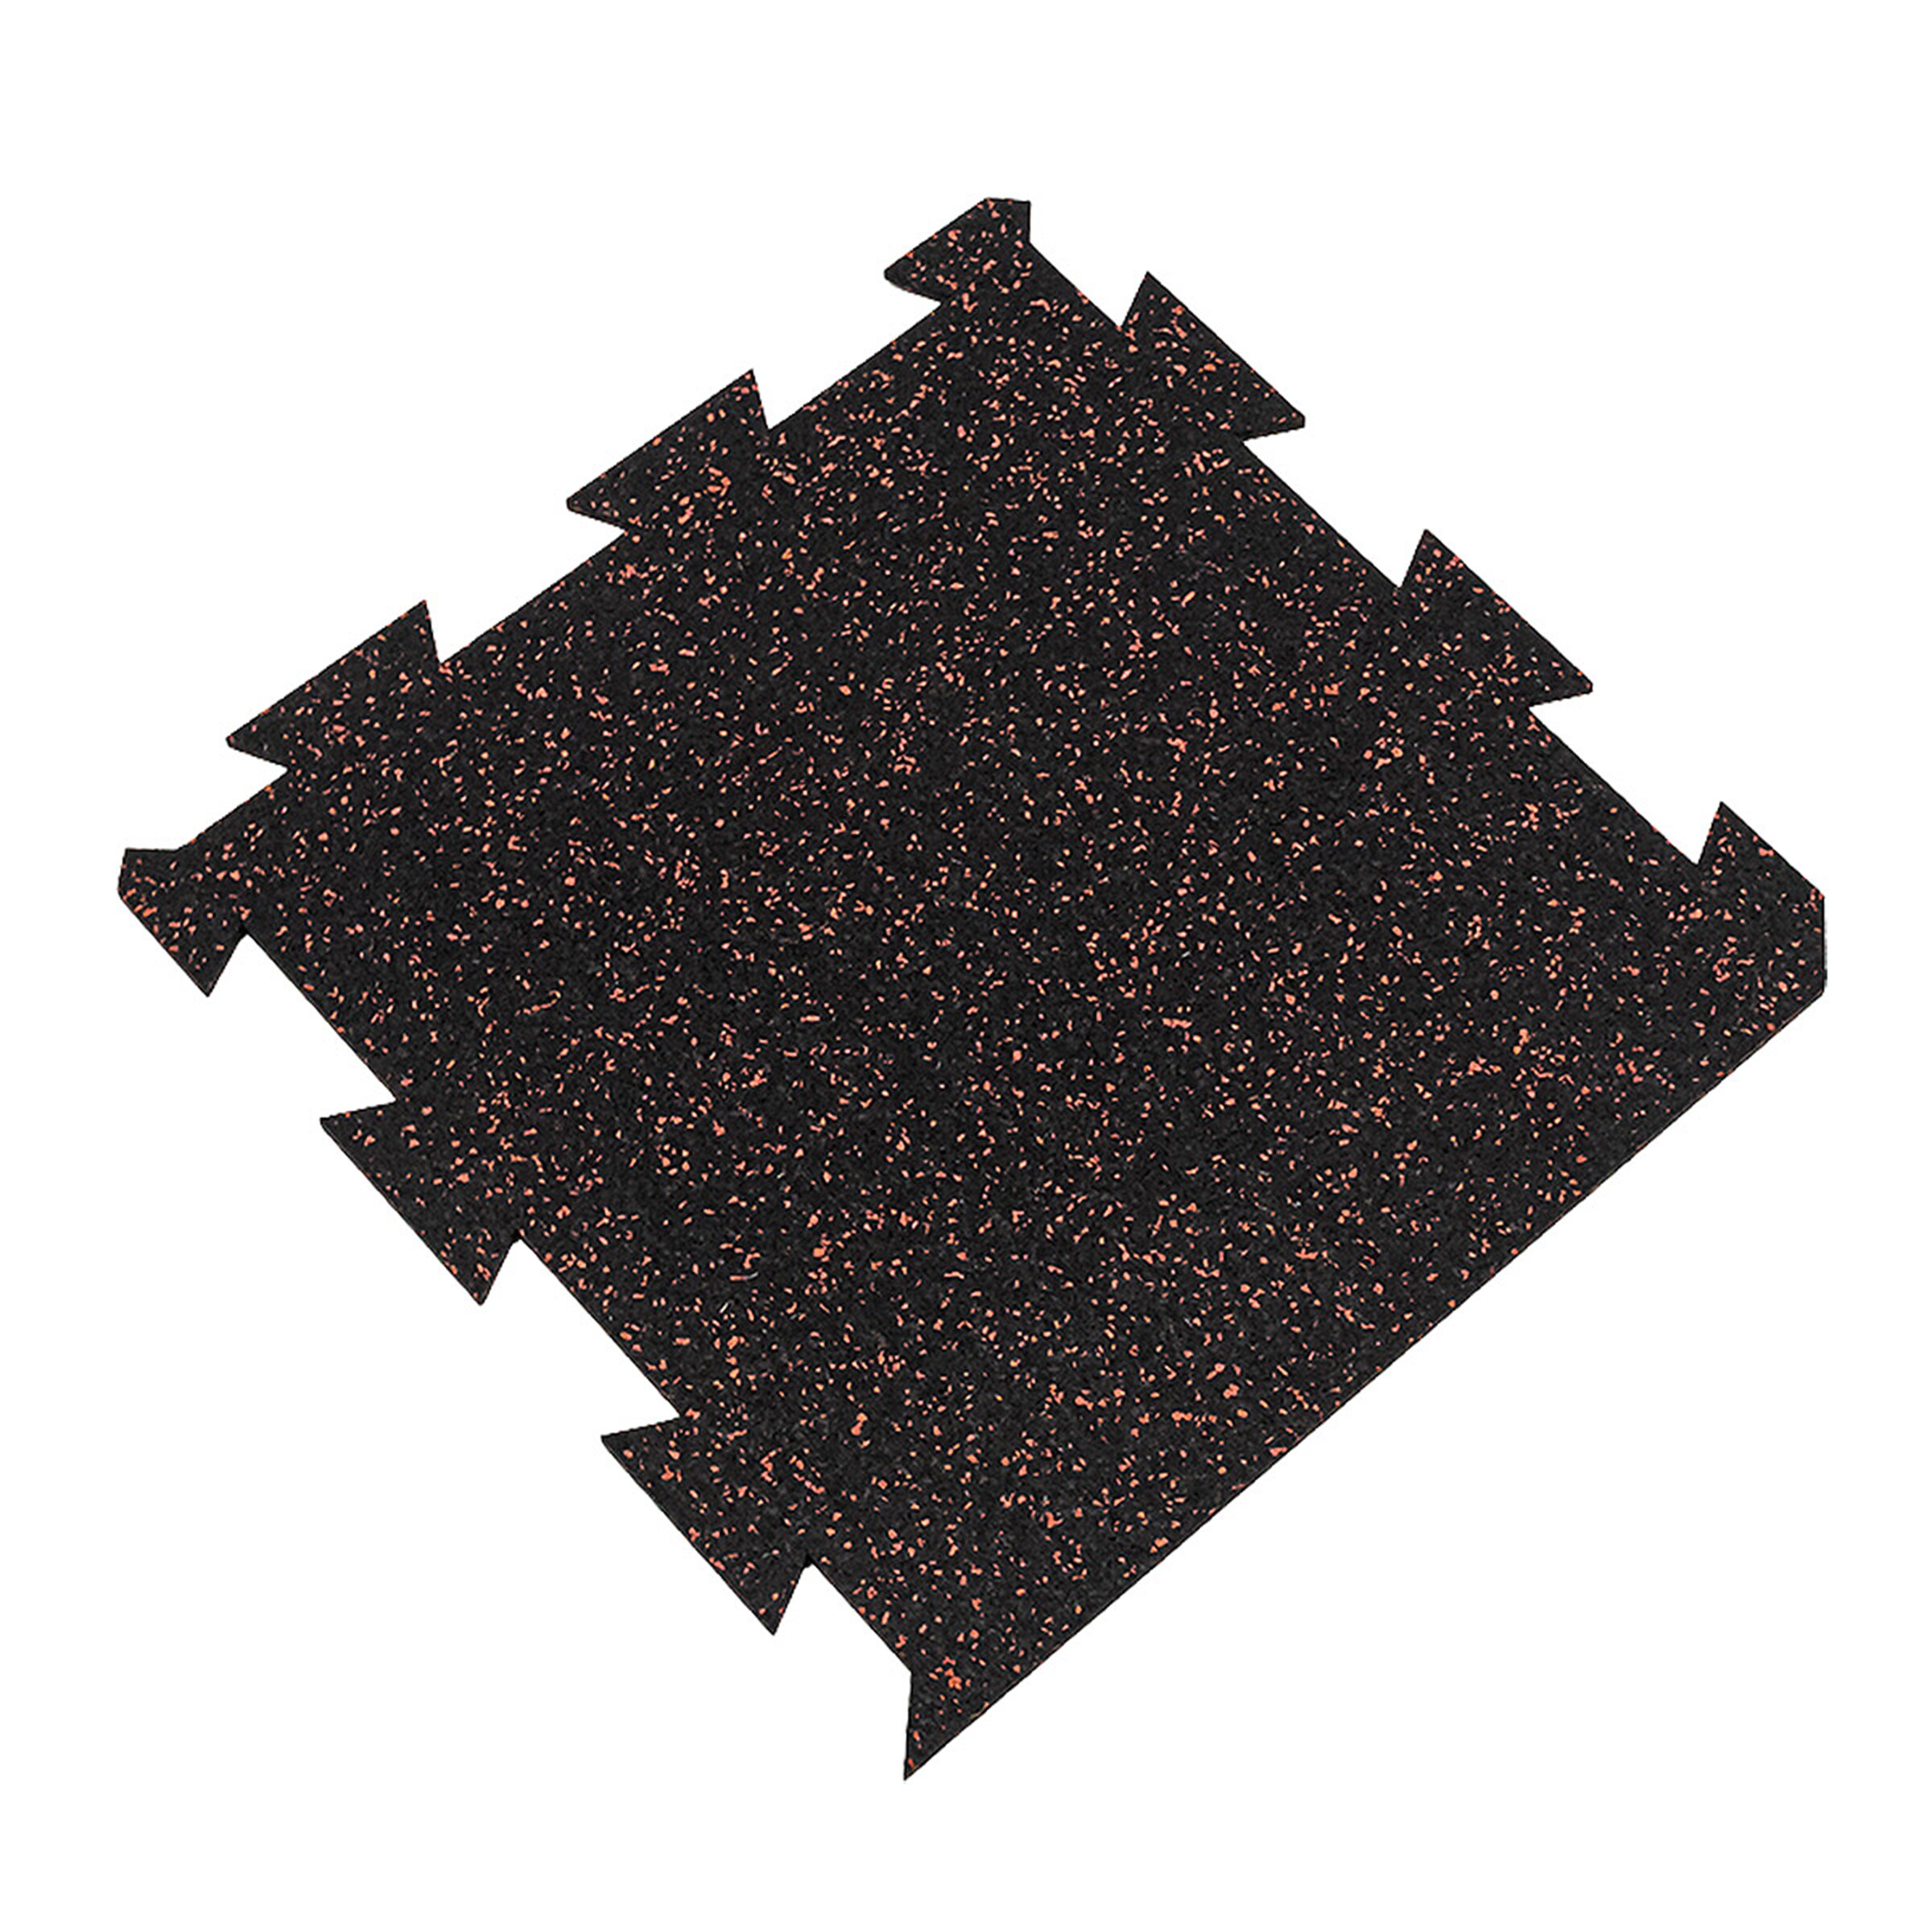 Černo-červená gumová puzzle modulová dlažba FLOMA SF1050 FitFlo - délka 50 cm, šířka 50 cm, výška 1 cm